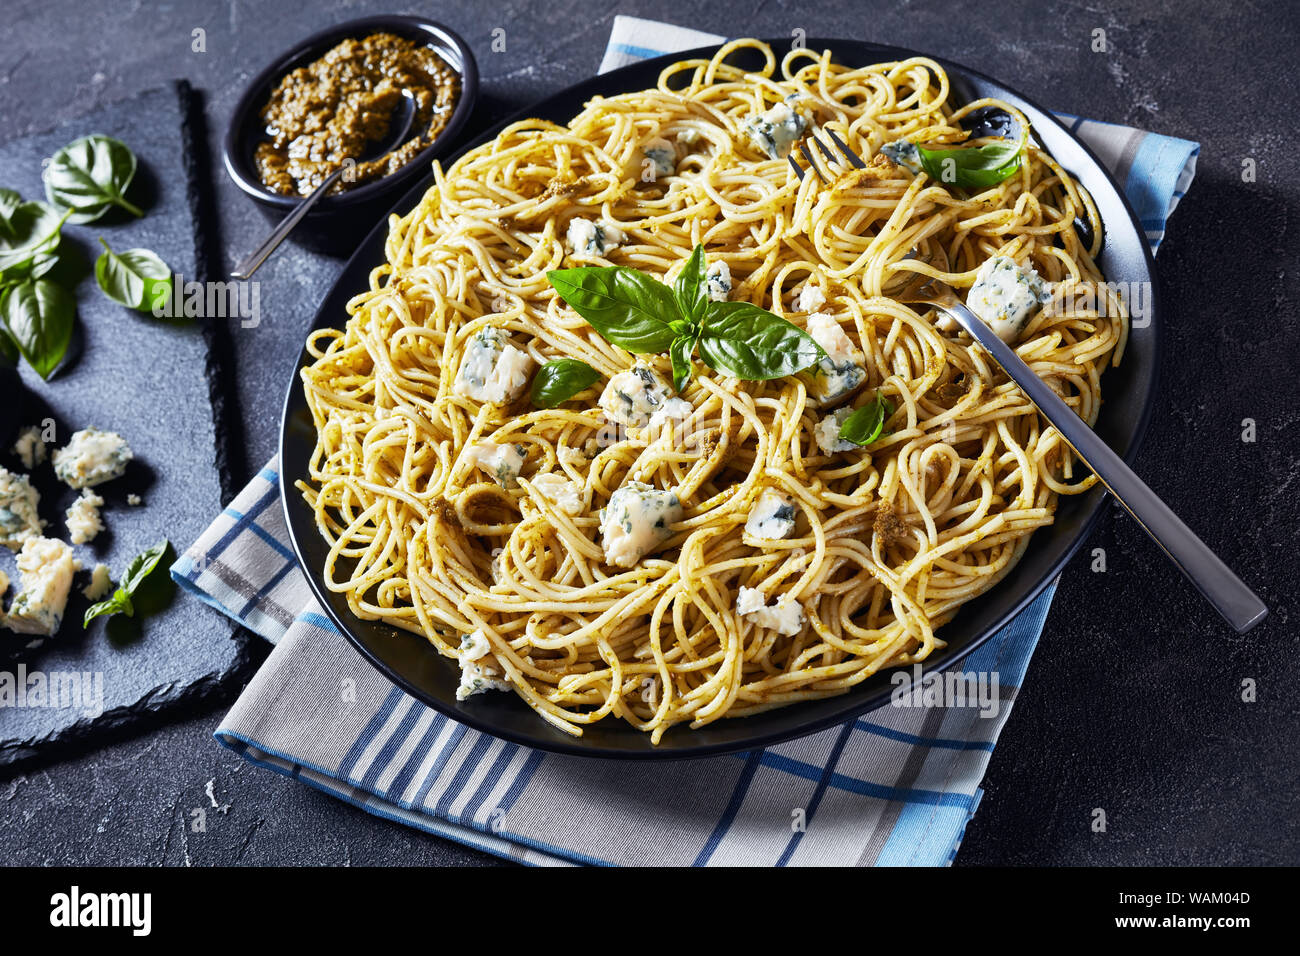 Close-up de délicieux spaghetti au pesto de basilic et de fromage bleu sur une plaque noire sur une table avec le pesto dans un bol noir, la cuisine italienne, hor Banque D'Images